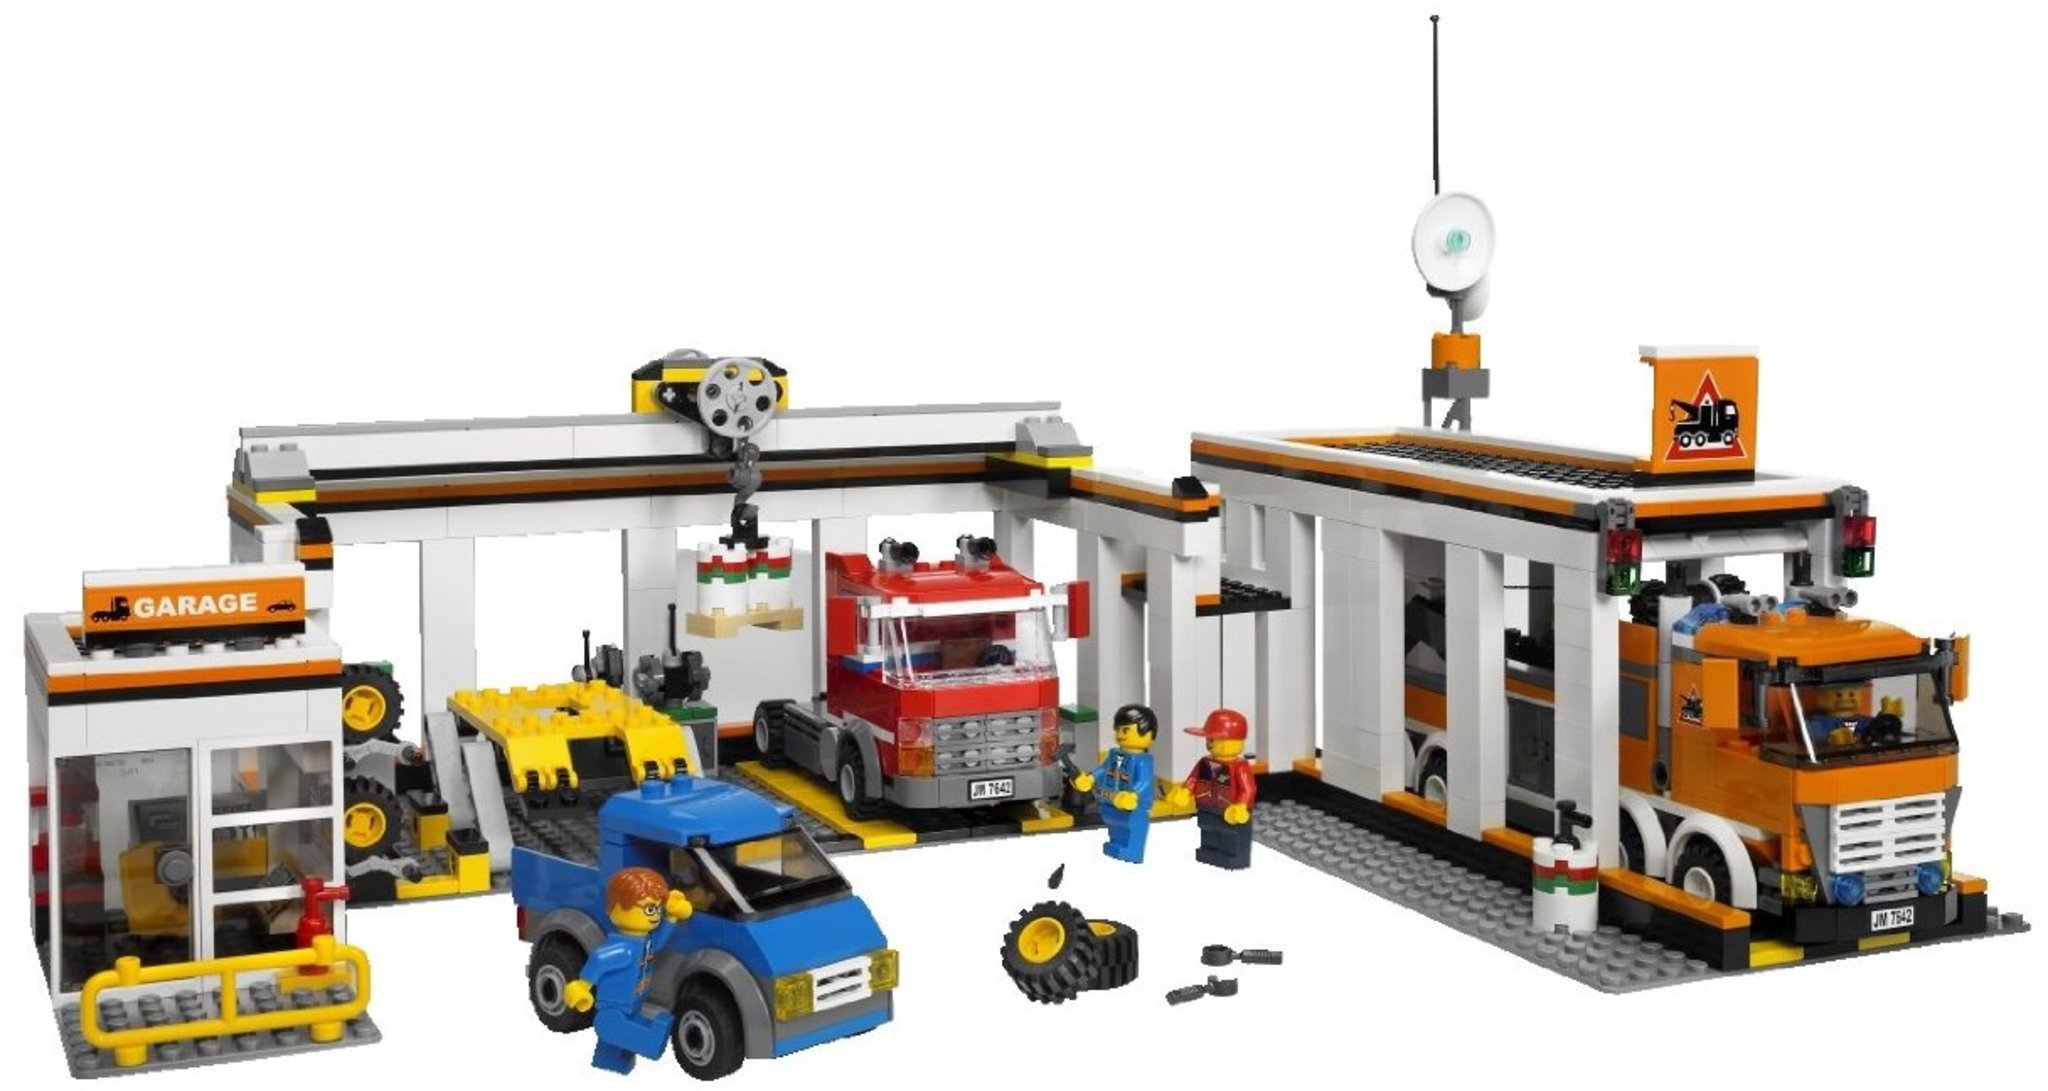 LEGO City 7642 - Garage | Mattonito